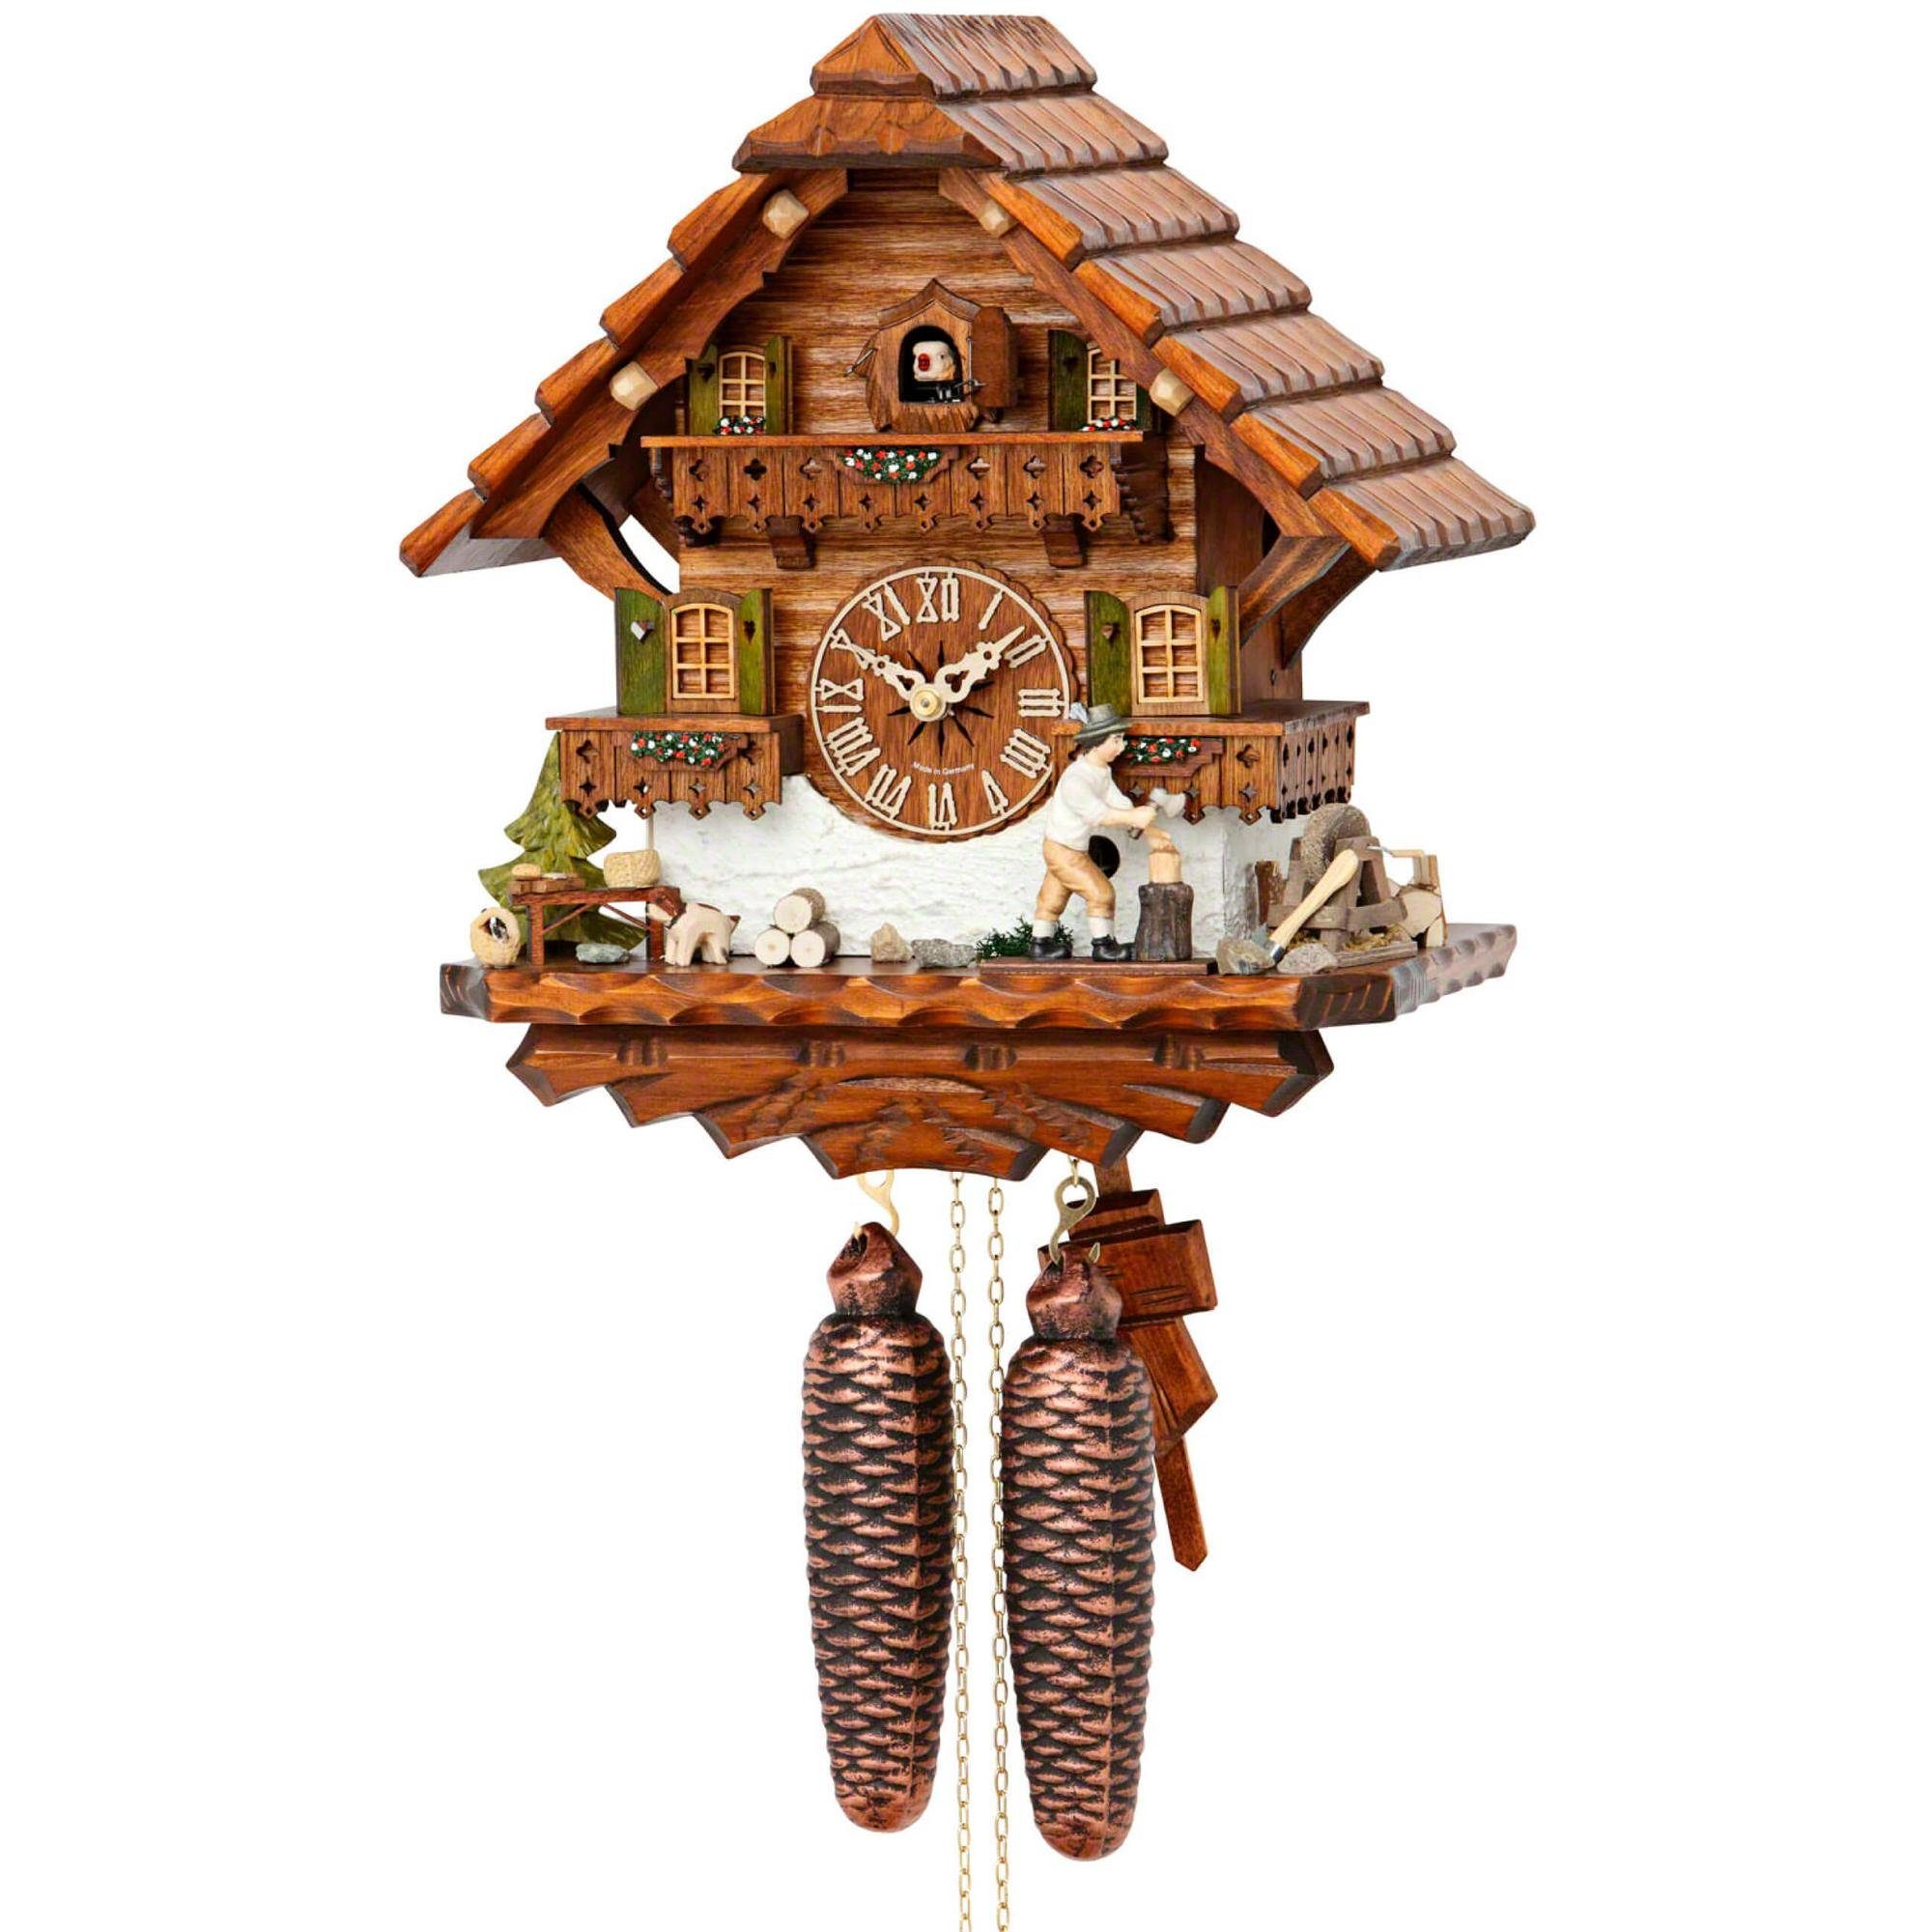 Cuco Clock Pendelwanduhr Kuckucksuhr Schwarzwalduhr 8 Holz Hund - mit Tage (17 Nachtabschaltung) 32cm, manuelle x "Holzhacker" Werk, aus x Wanduhr 30